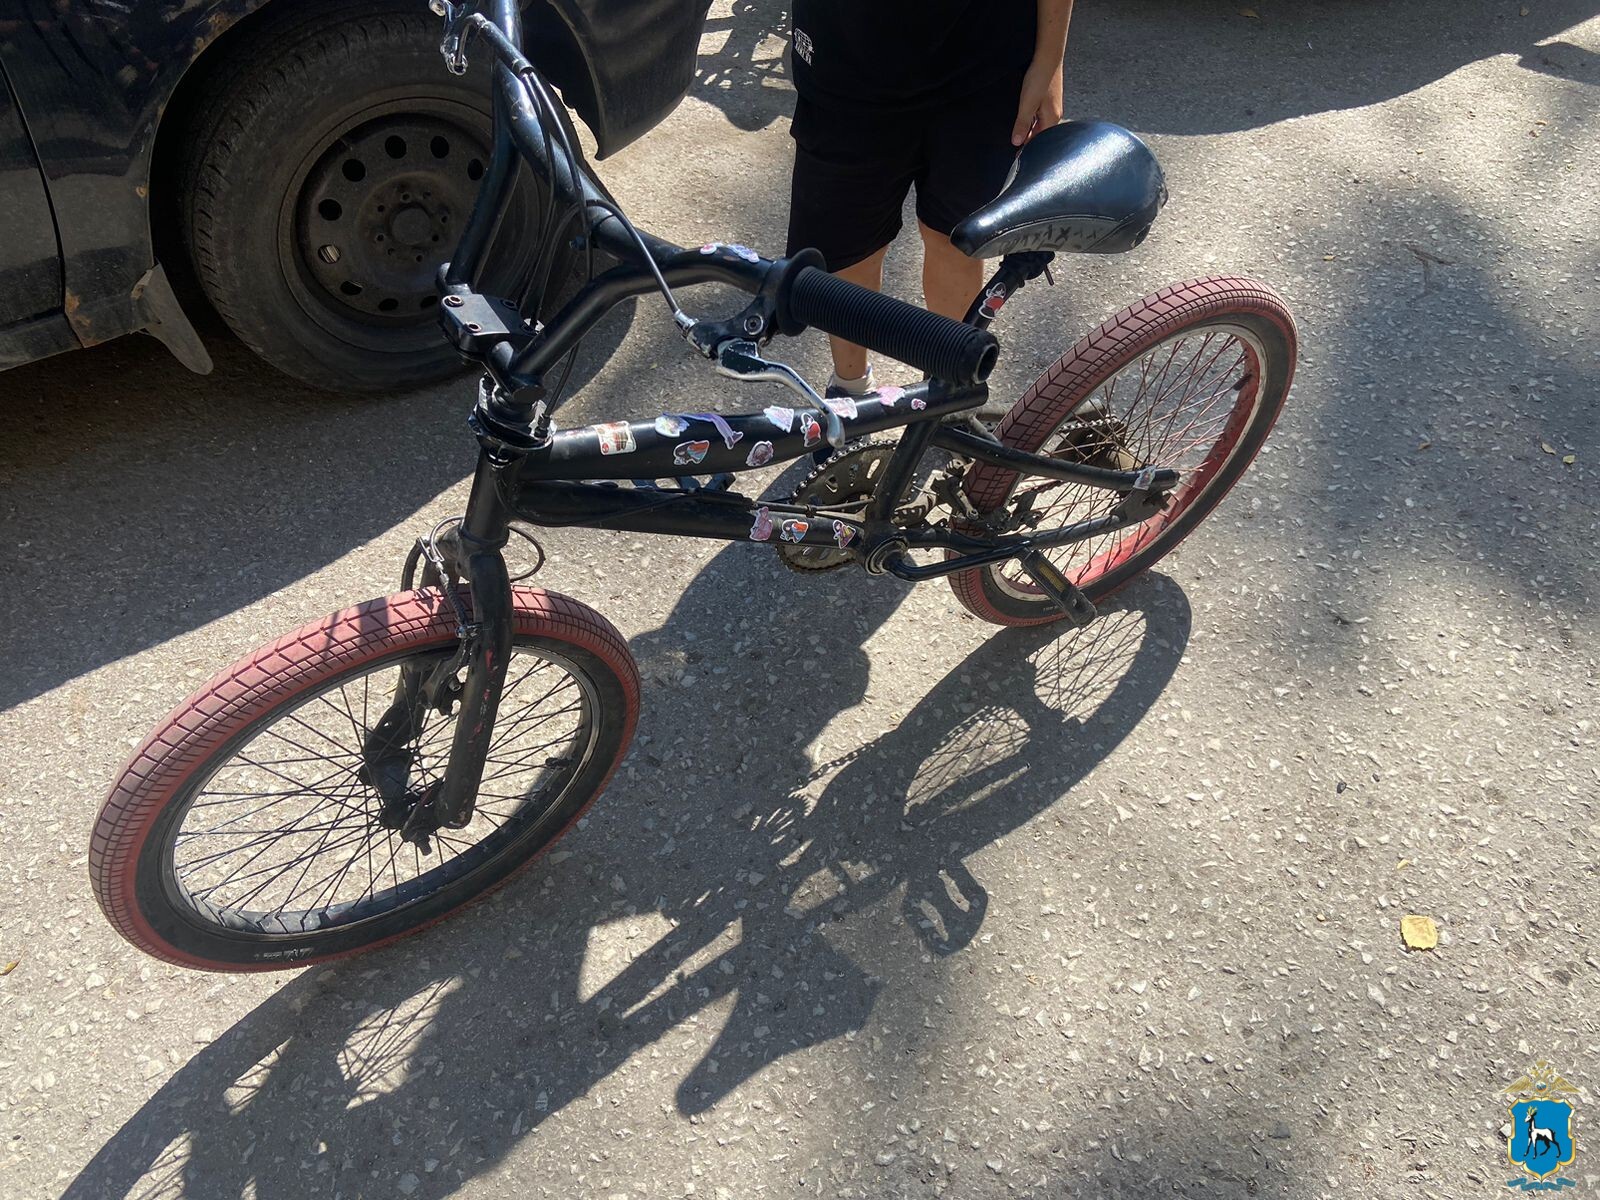  В Самаре 18-летний водитель иномарки сбил 10-летнюю девочку на велосипеде 